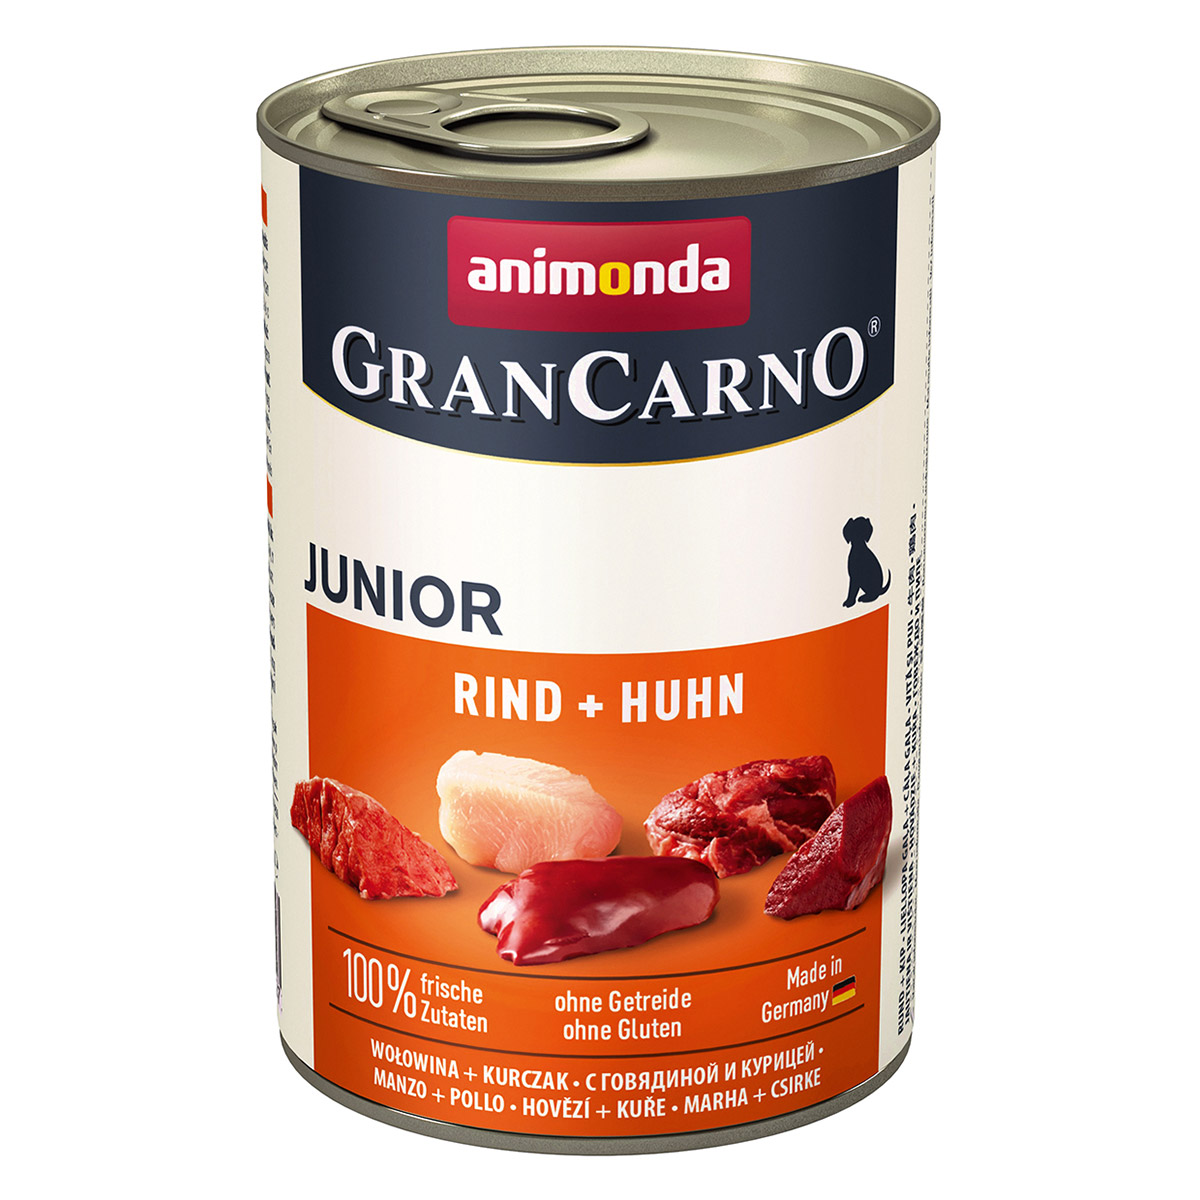 animonda grancarno junior rind huhn 400g